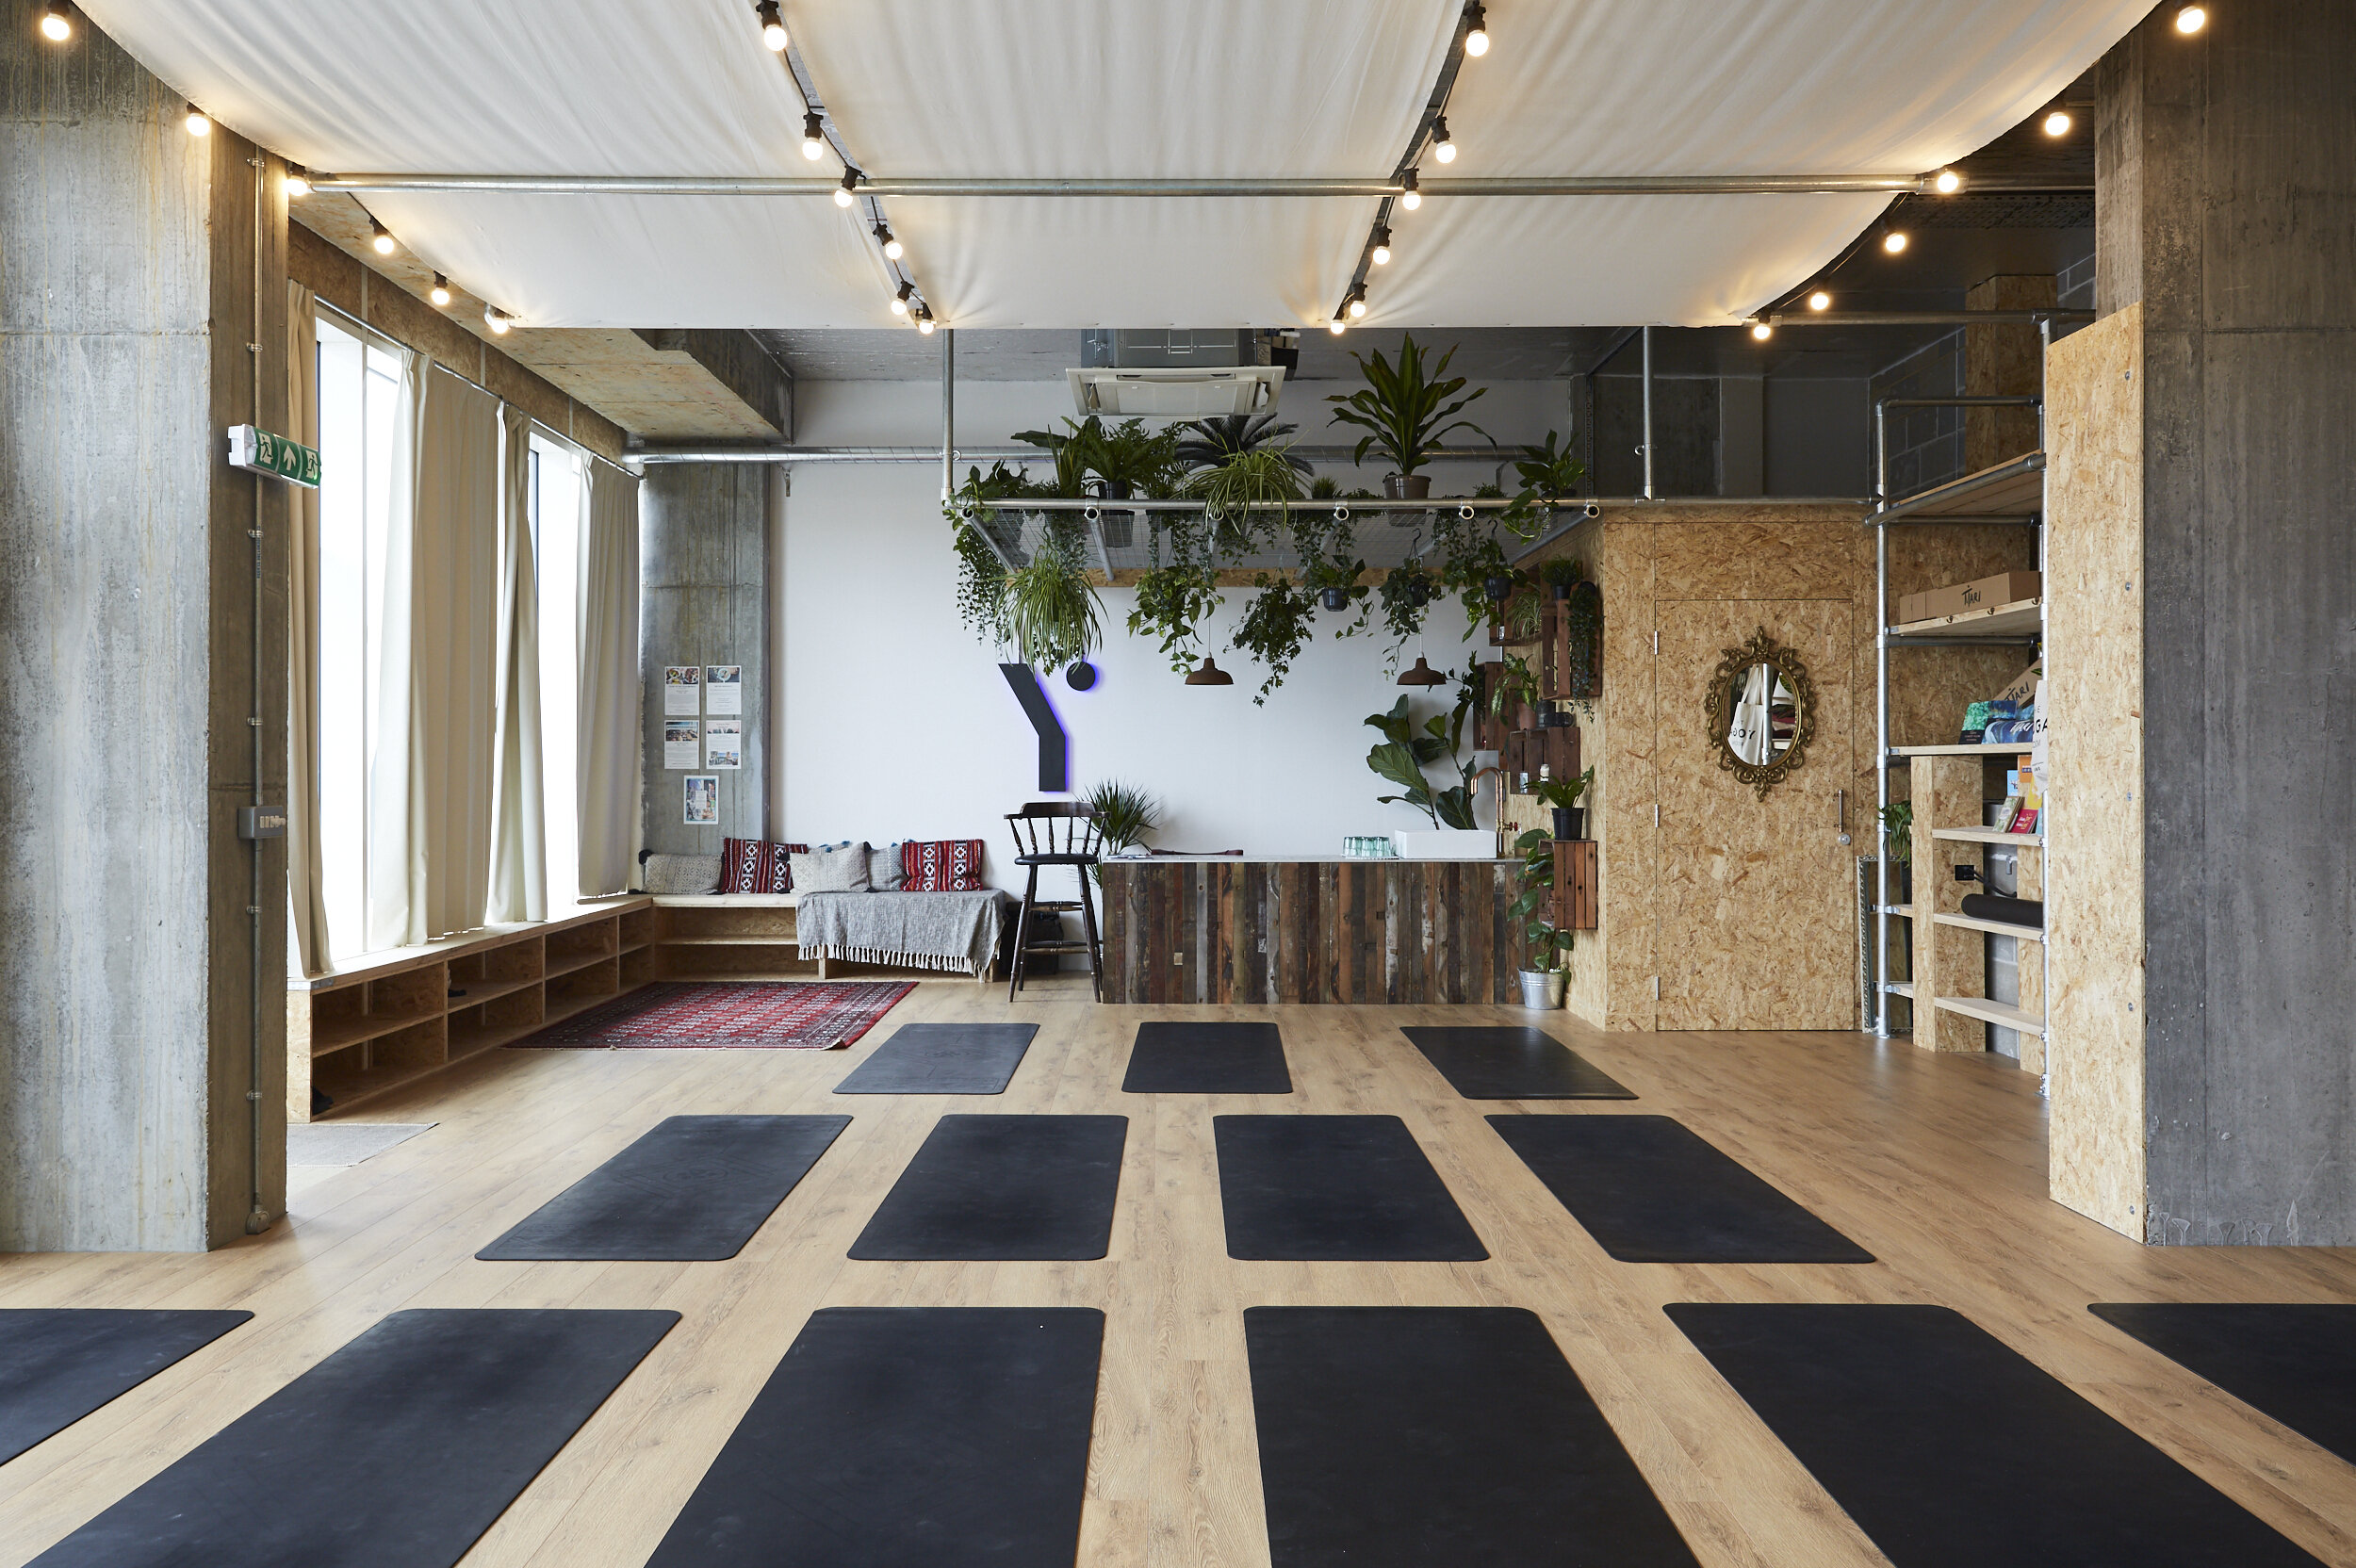 The Yoga Room — South London Club